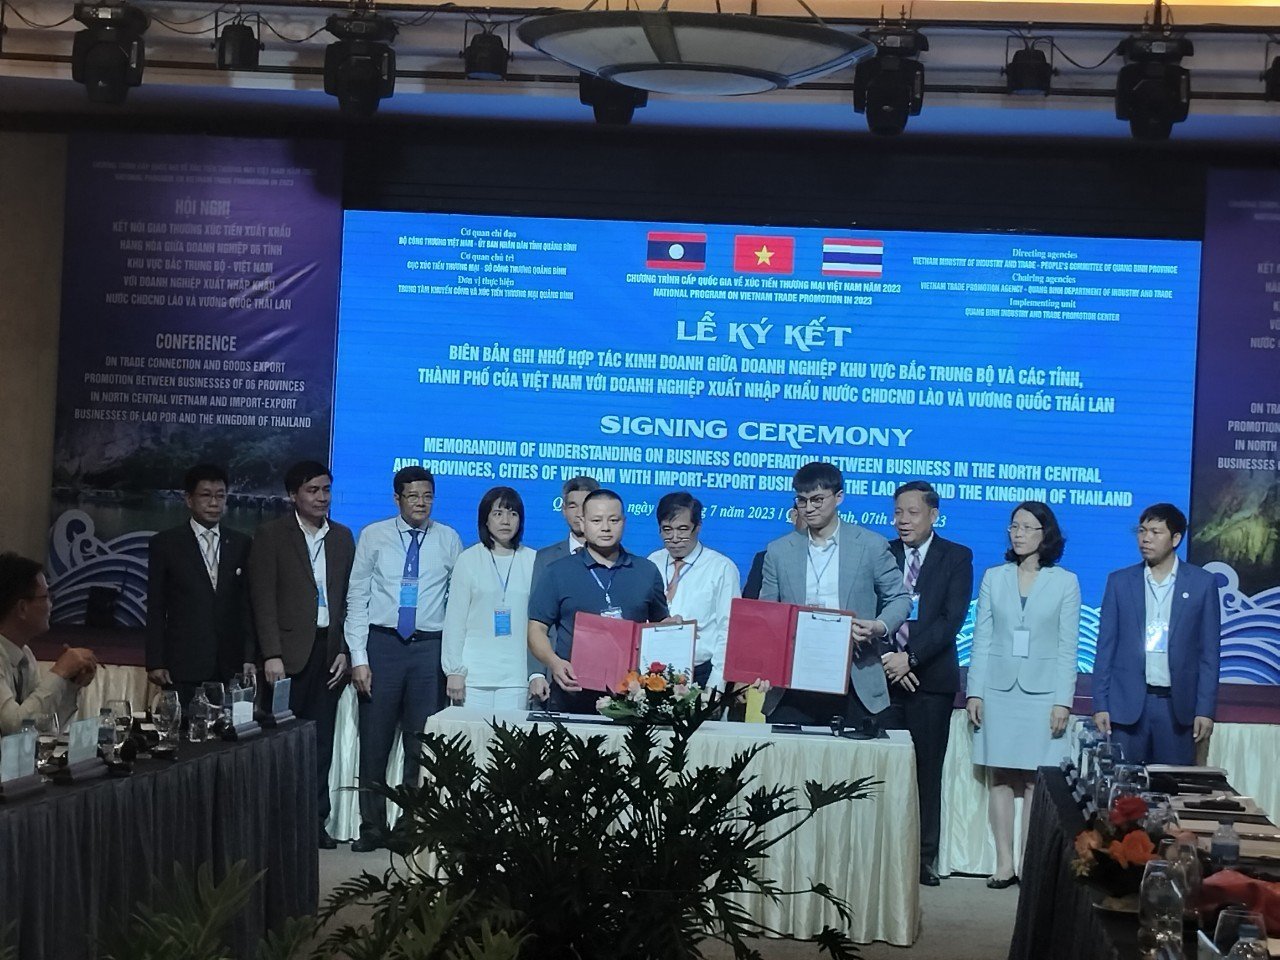 Cơ hội hợp tác của Doanh nghiệp Hà Tĩnh tại Hội nghị kết nối giao thương giữa doanh nghiệp 6 tỉnh khu vực Bắc Trung bộ của Việt Nam với doanh nghiệp xuất, nhập khẩu nước CHDCND Lào và Vương quốc Thái Lan